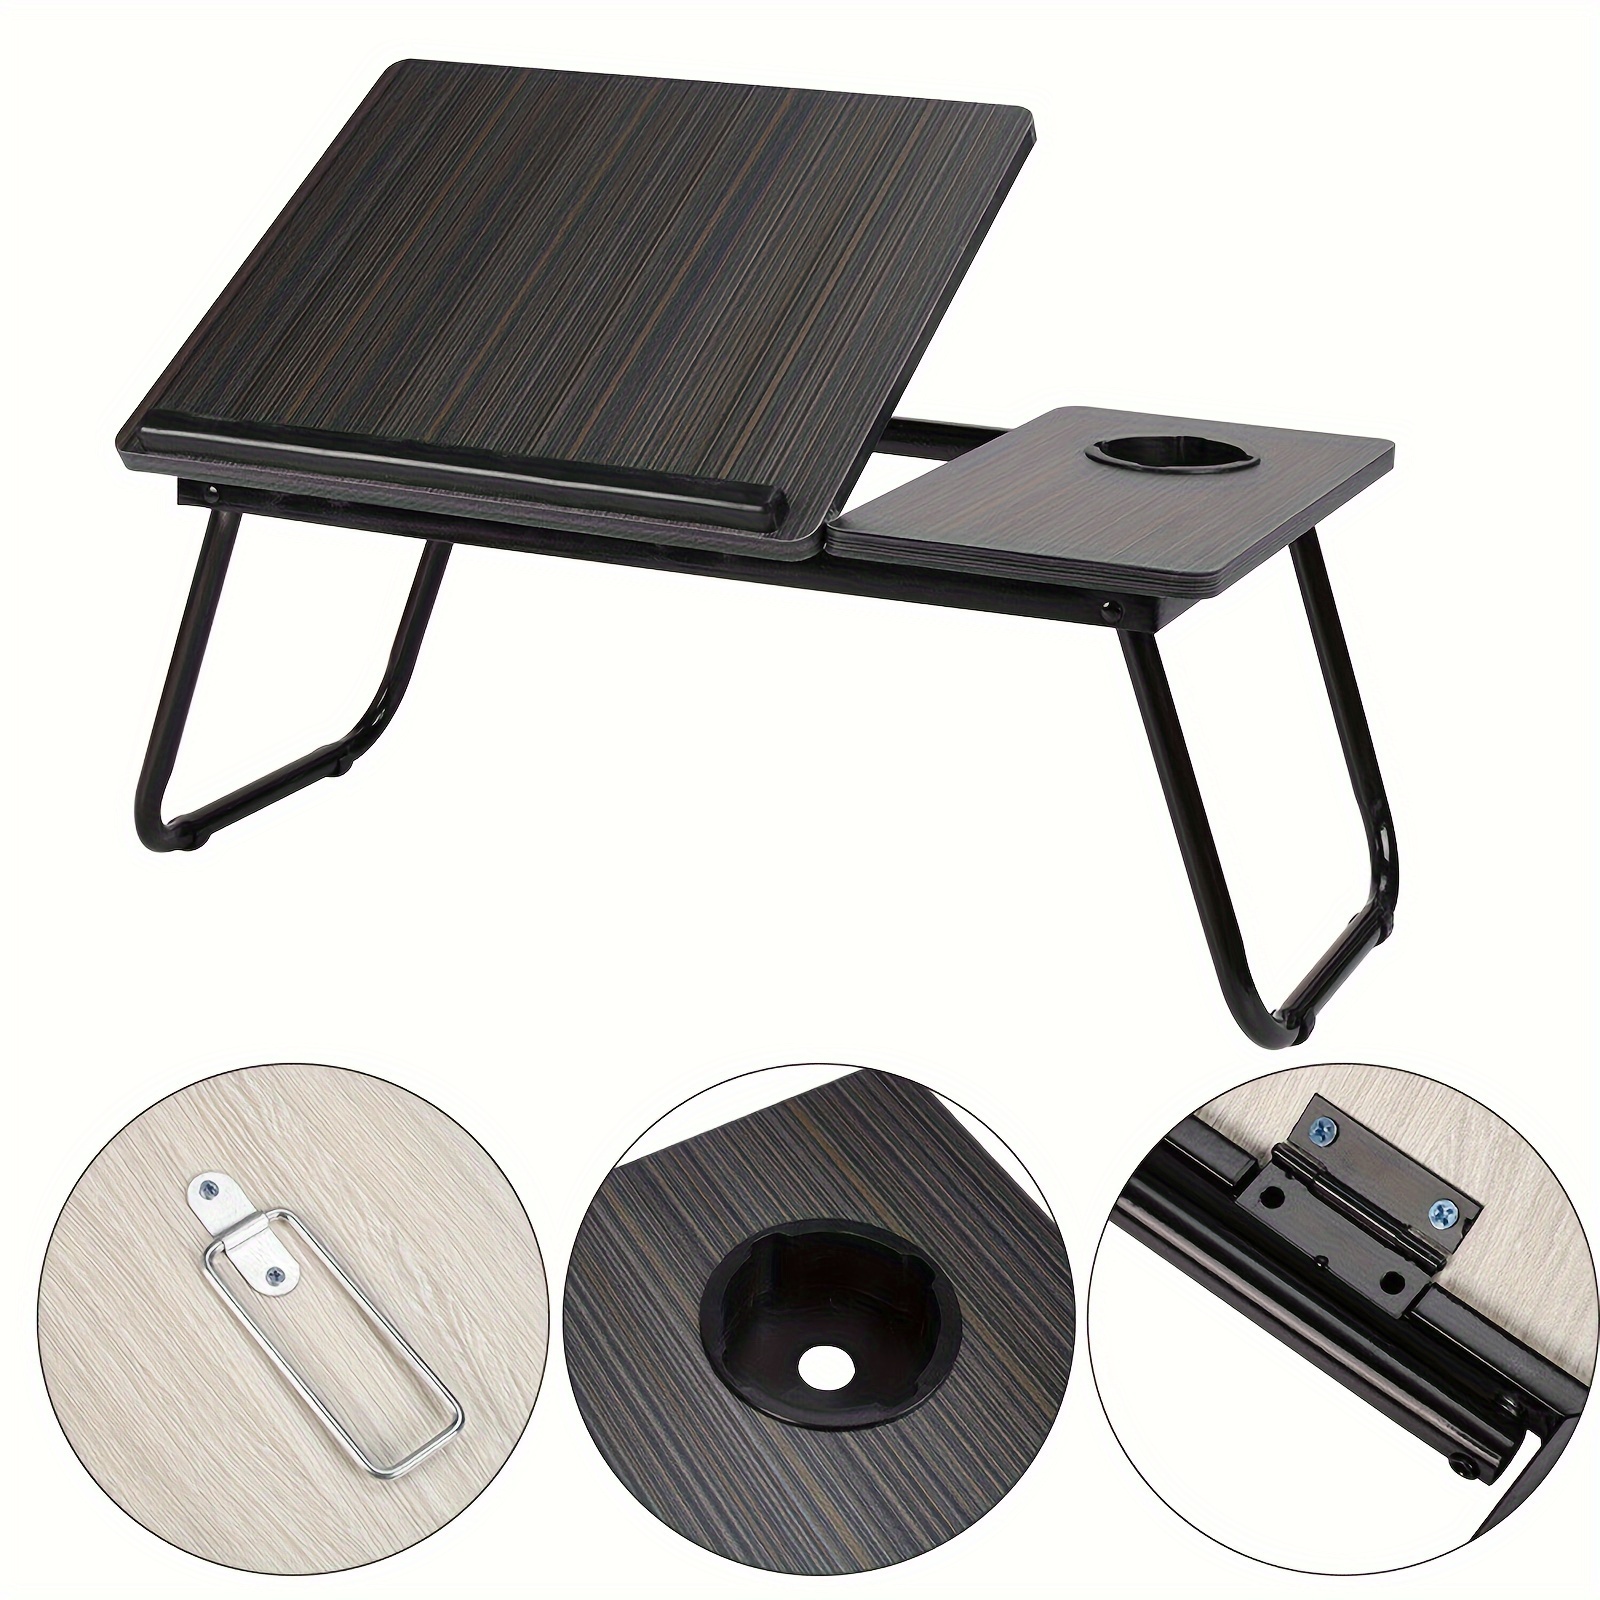 AIMTYD Table de plateau de lit pour ordinateur portable, bureau réglable et portable  pour ordinateur portable, plateaux de petit-déjeuner pour lit, bureau d'ordinateur  portable pliable pour lit, canapé, canapé 